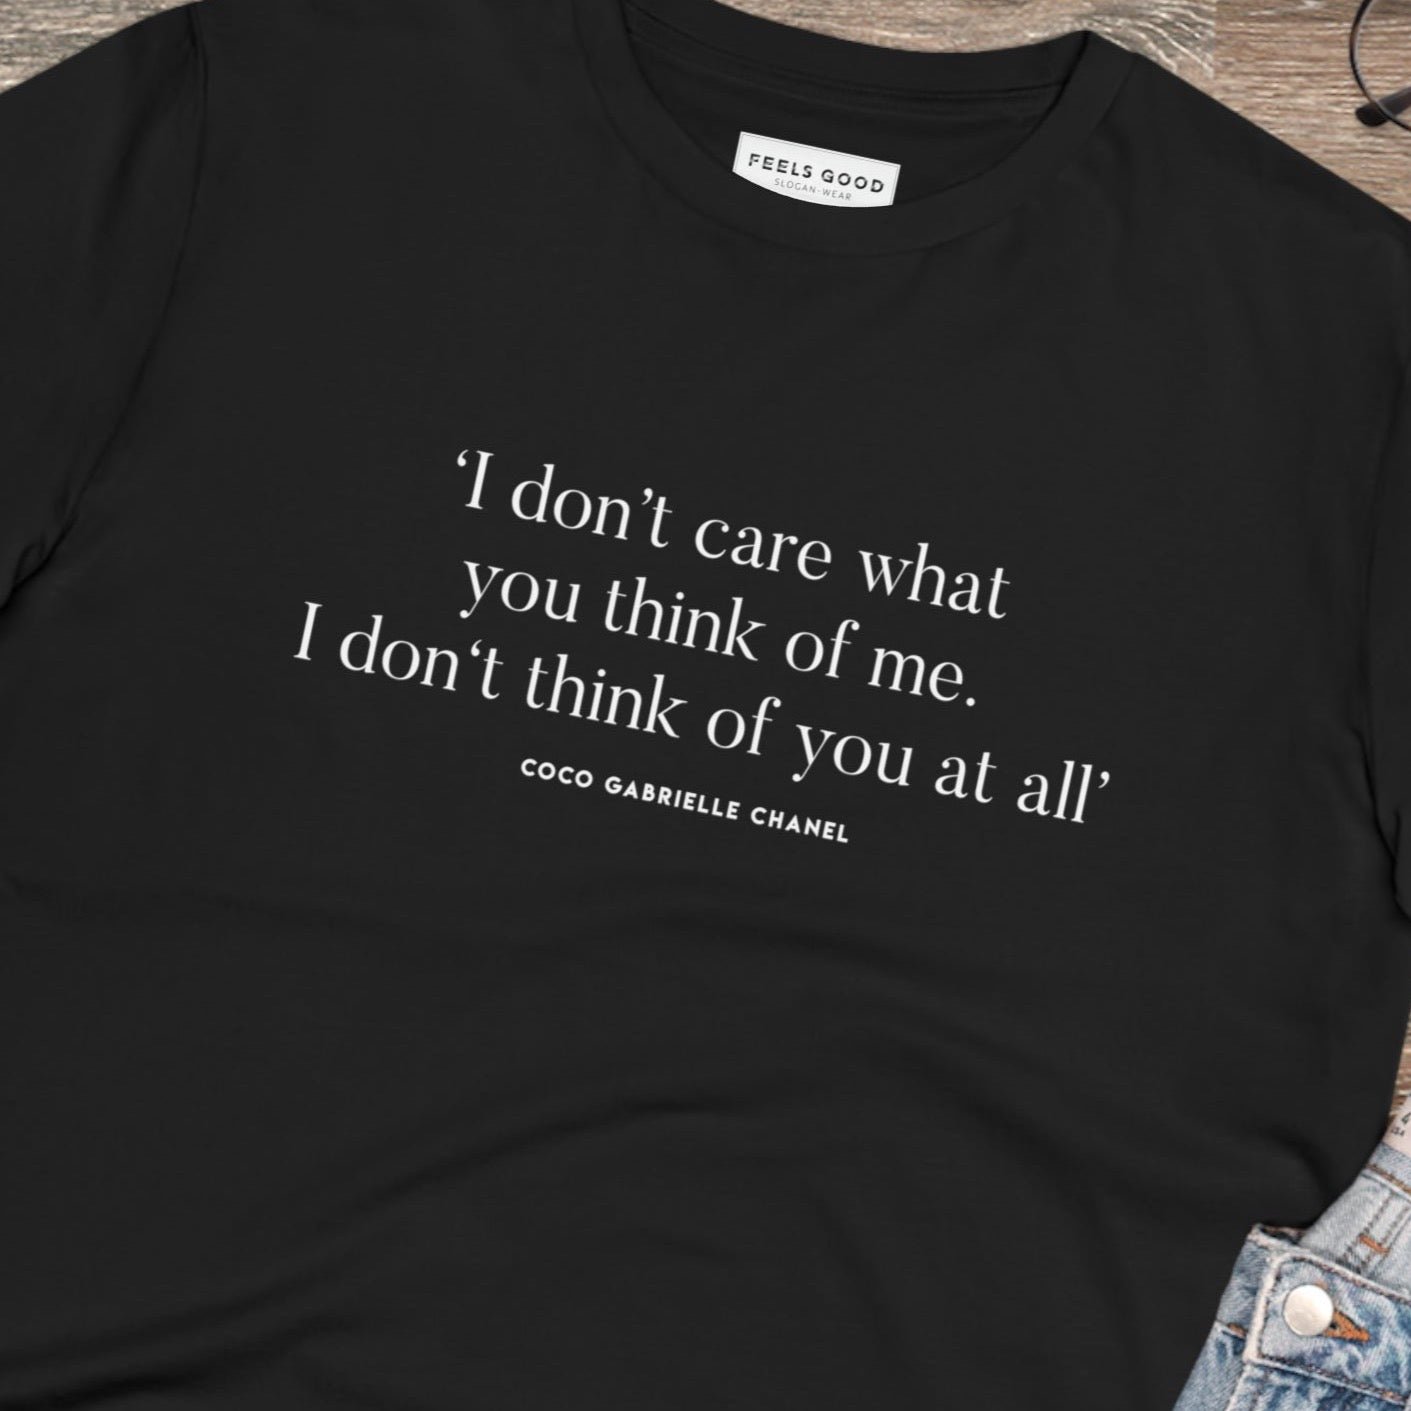 Fashion 'Me, Myself & I' Coco Organic Cotton T-shirt - Coco Quote Tshirt